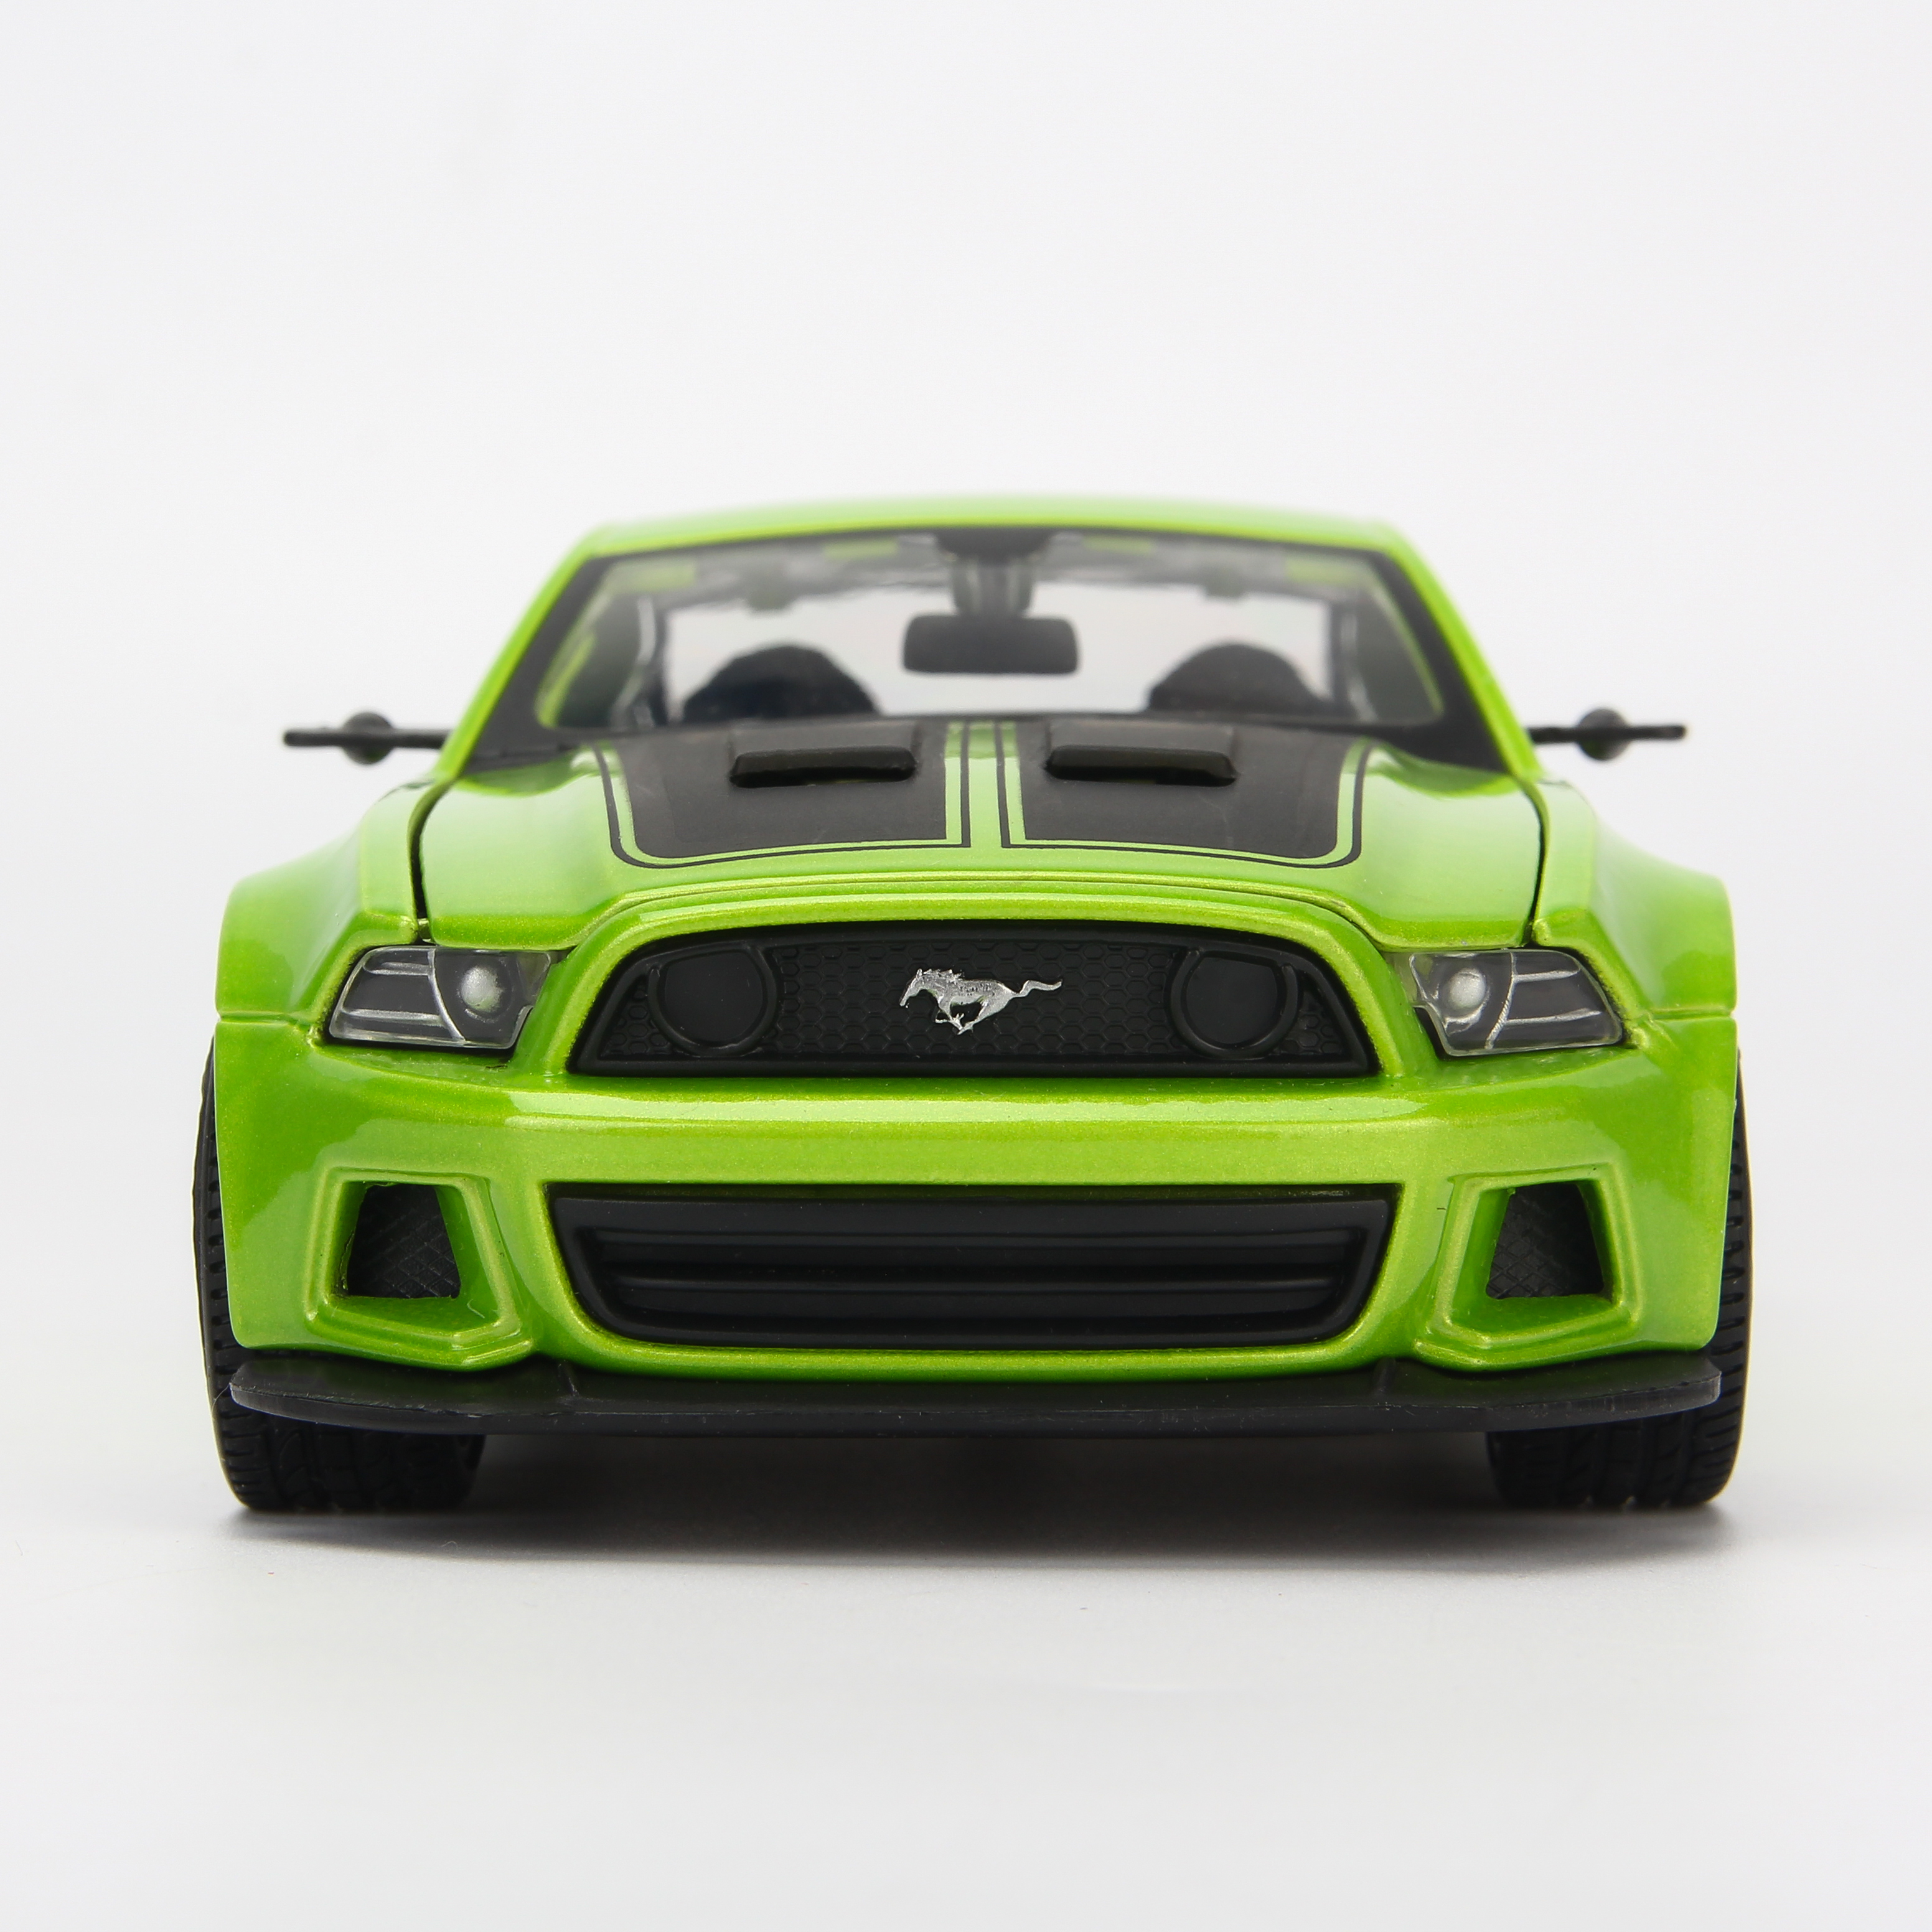 Mô Hình Xe Ford Mustang Street Racer Green 1:24 Maisto MH-31506